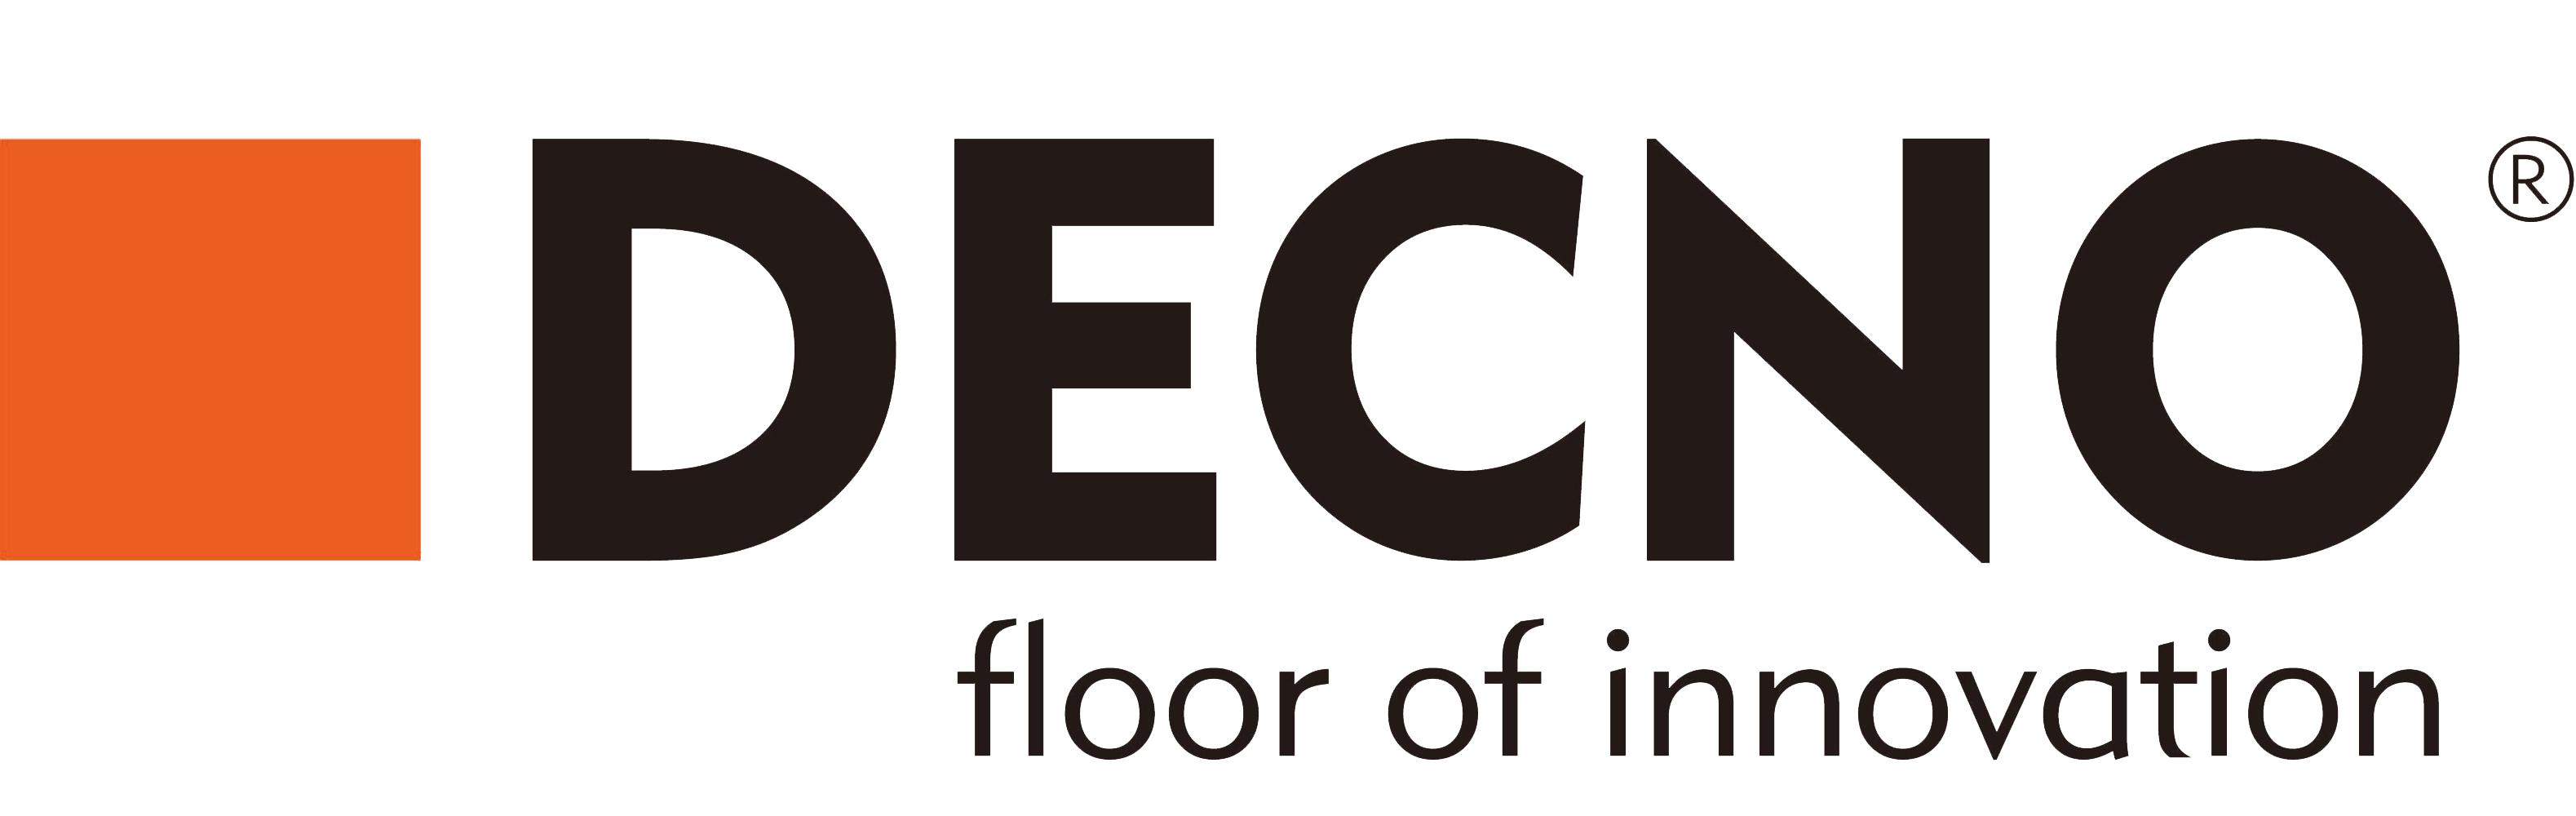 DECNO LOGO,floor of innovation